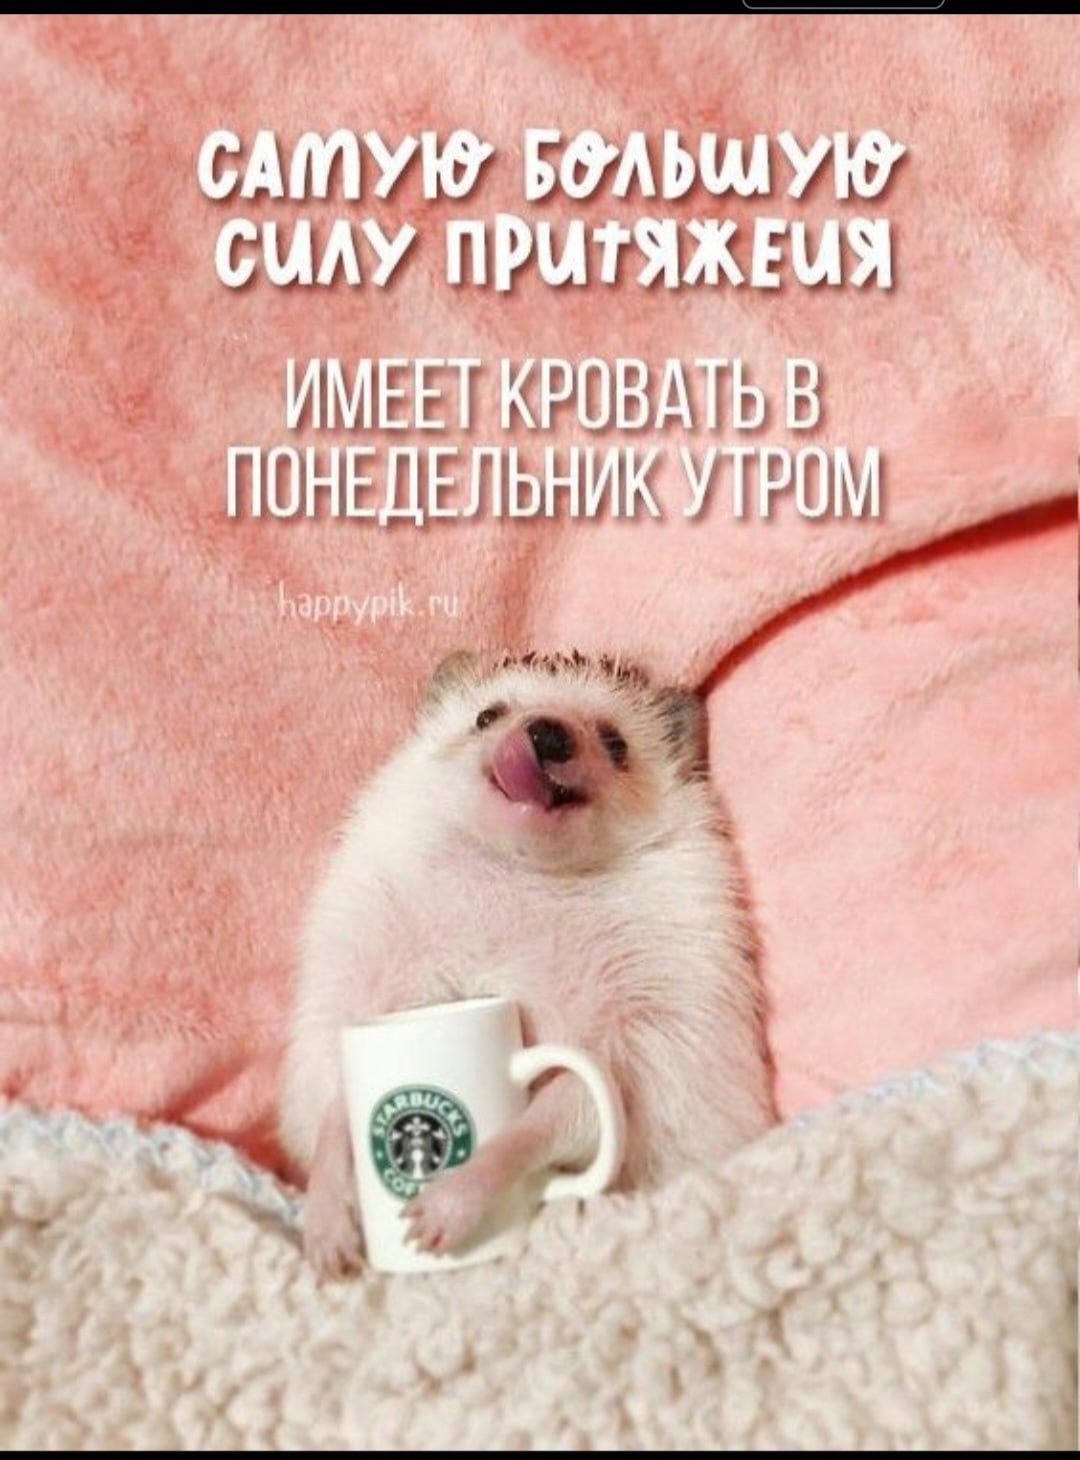 ежик держит чашку с логотипом Starbucks, лежа на спине, на фоне розового пледа, с текстом на русском о понедельнике утром